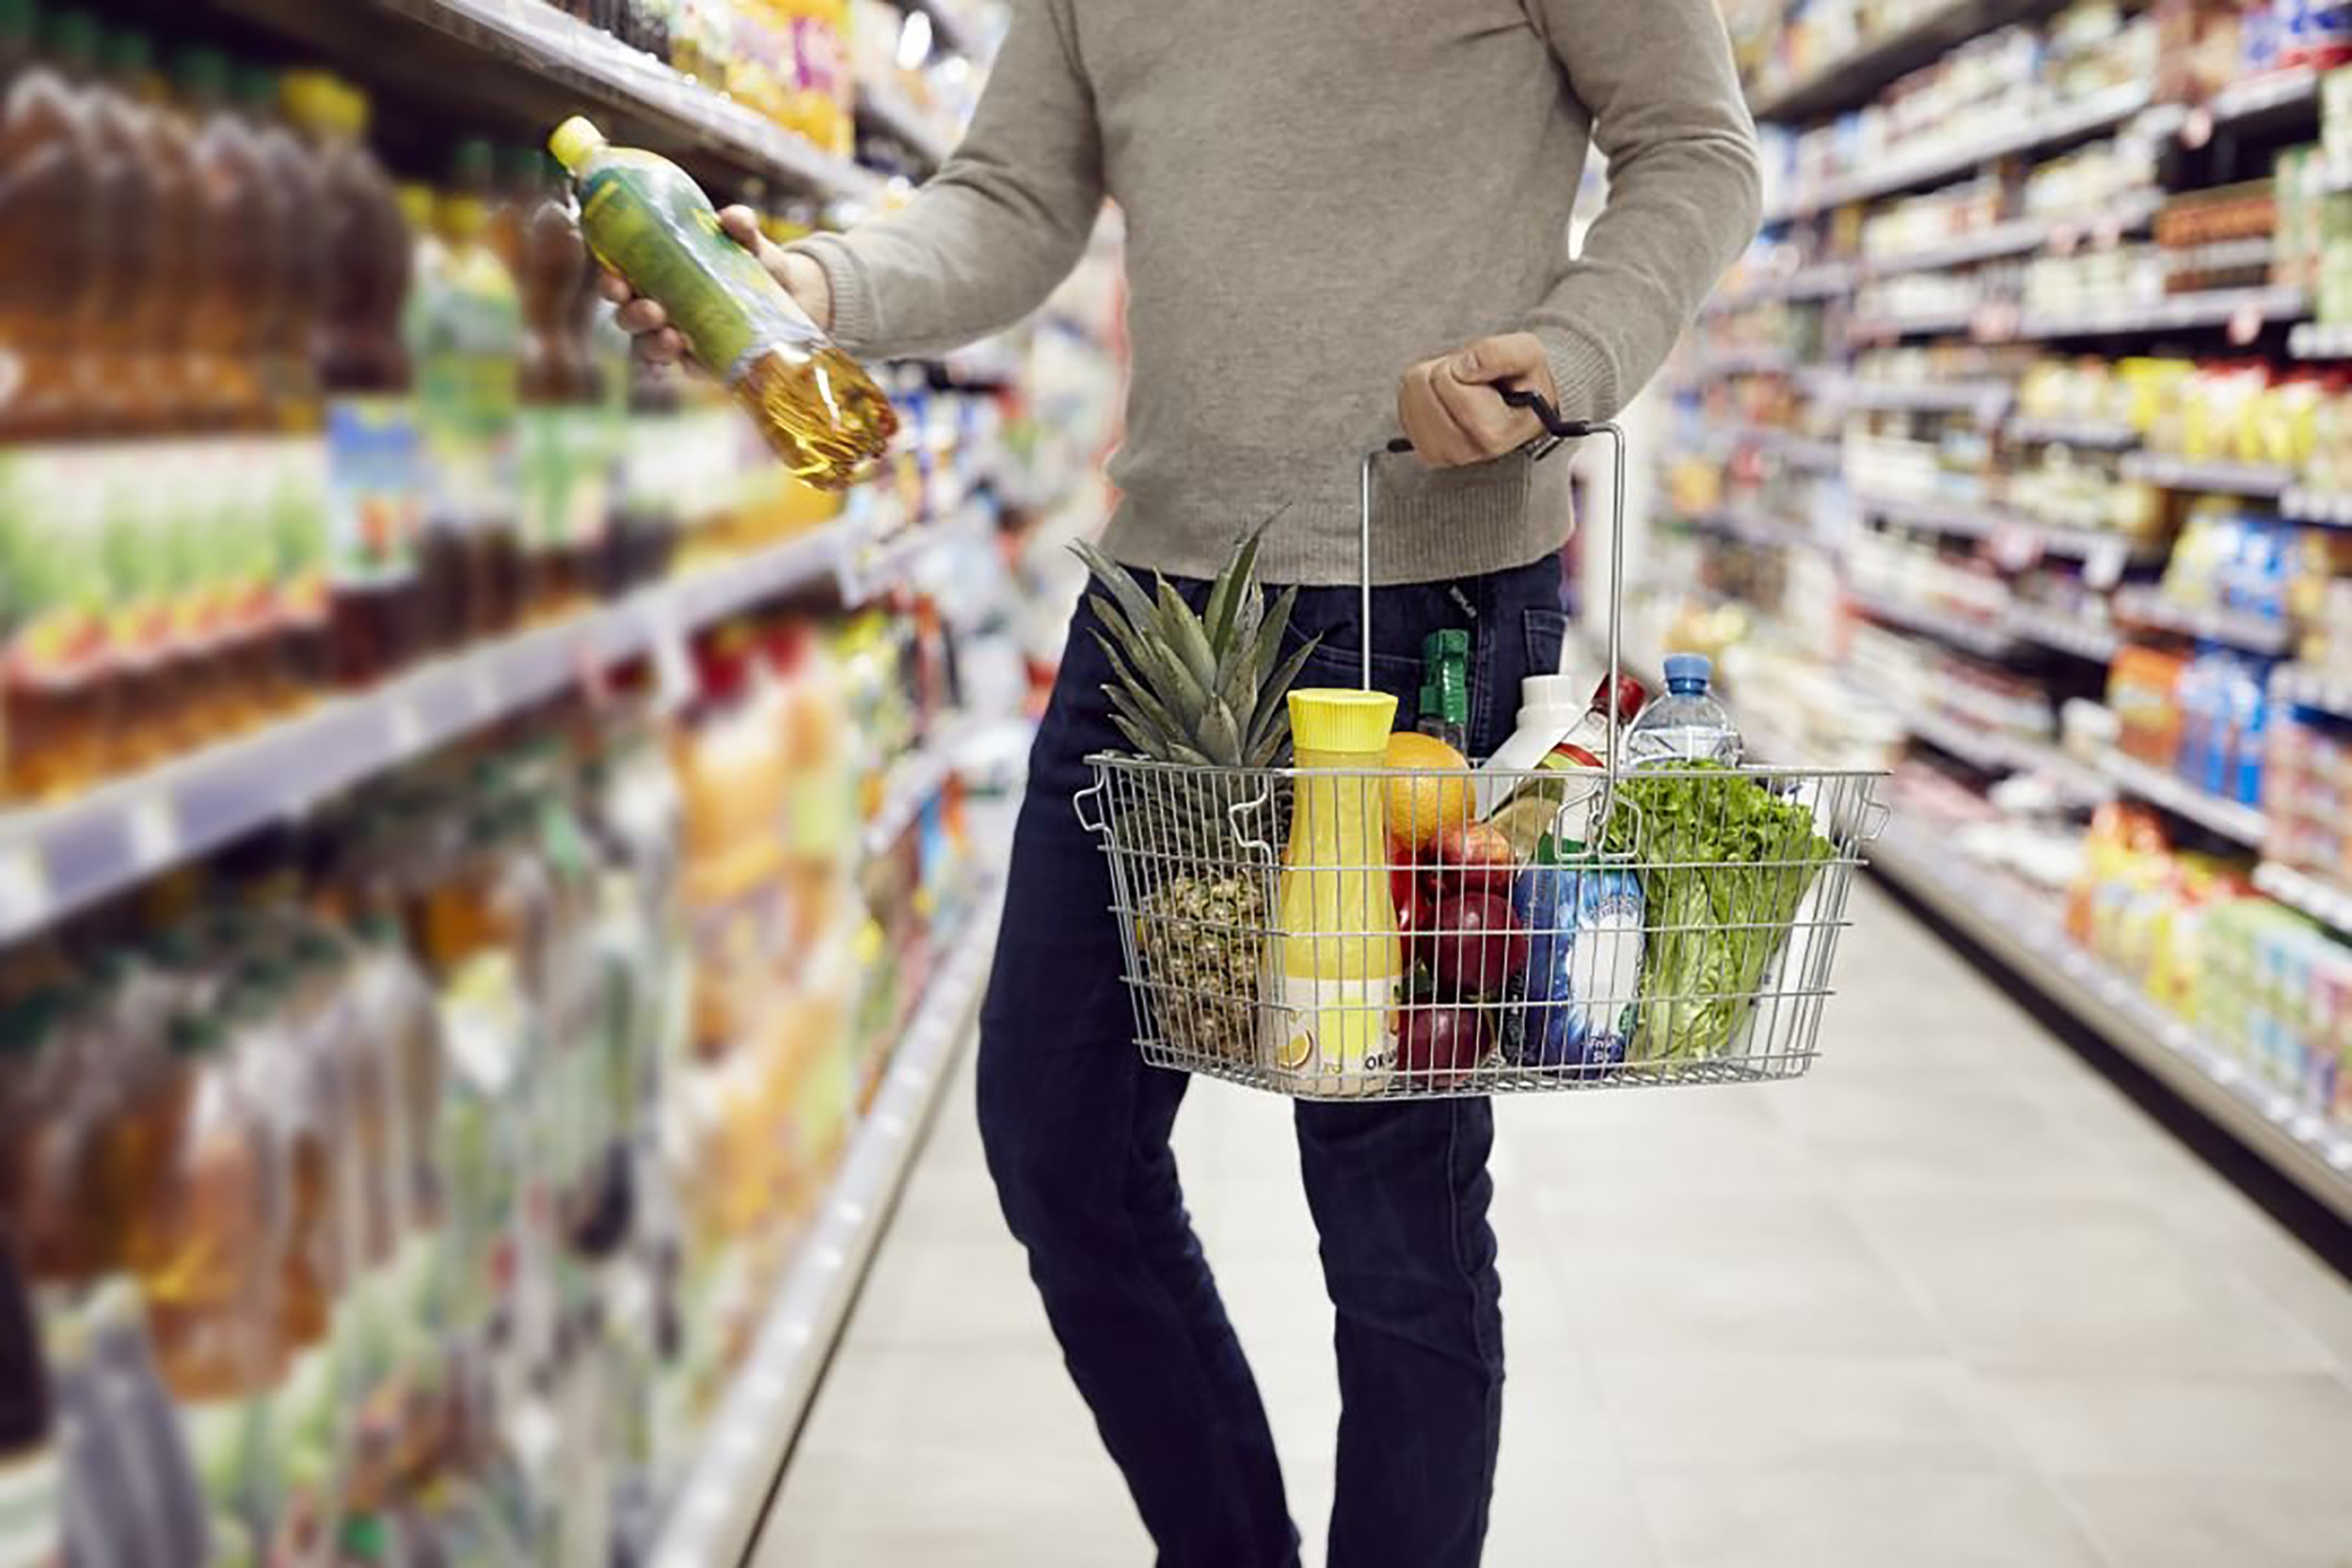 Viele frische Lebensmittel wie Gemüse und Fleisch sind in Kunststoff verpackt – ein klarer Hygienegewinn für Konsumenten und ein Nachhaltigkeitsgewinn für die Umwelt.